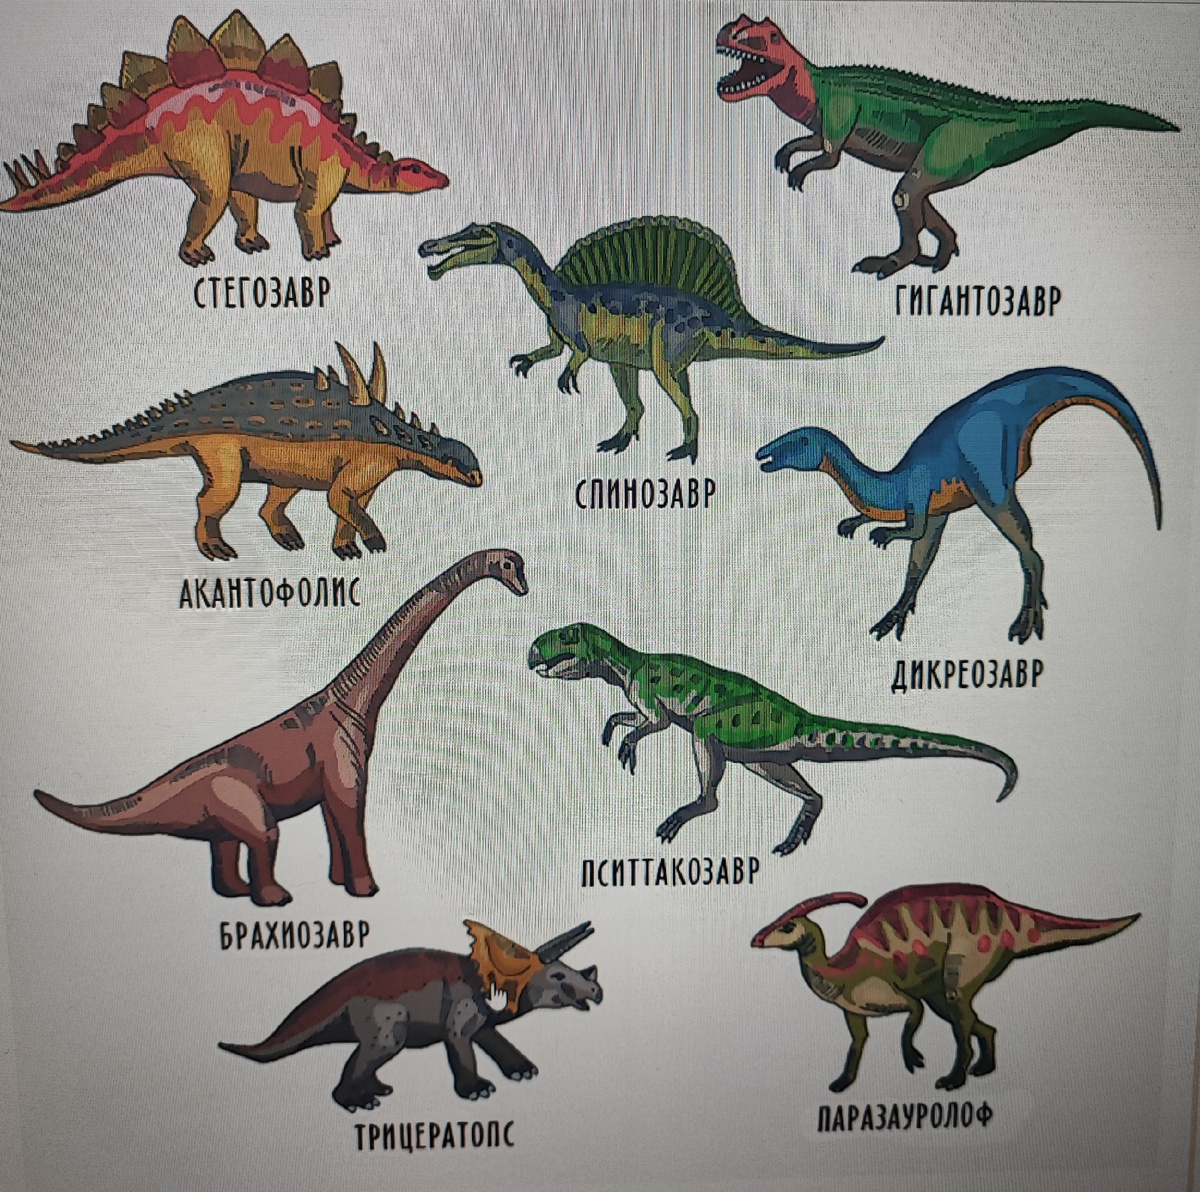 Динозавр из пластилина поэтапно (с фото) - статья из серии «Детский отдых»